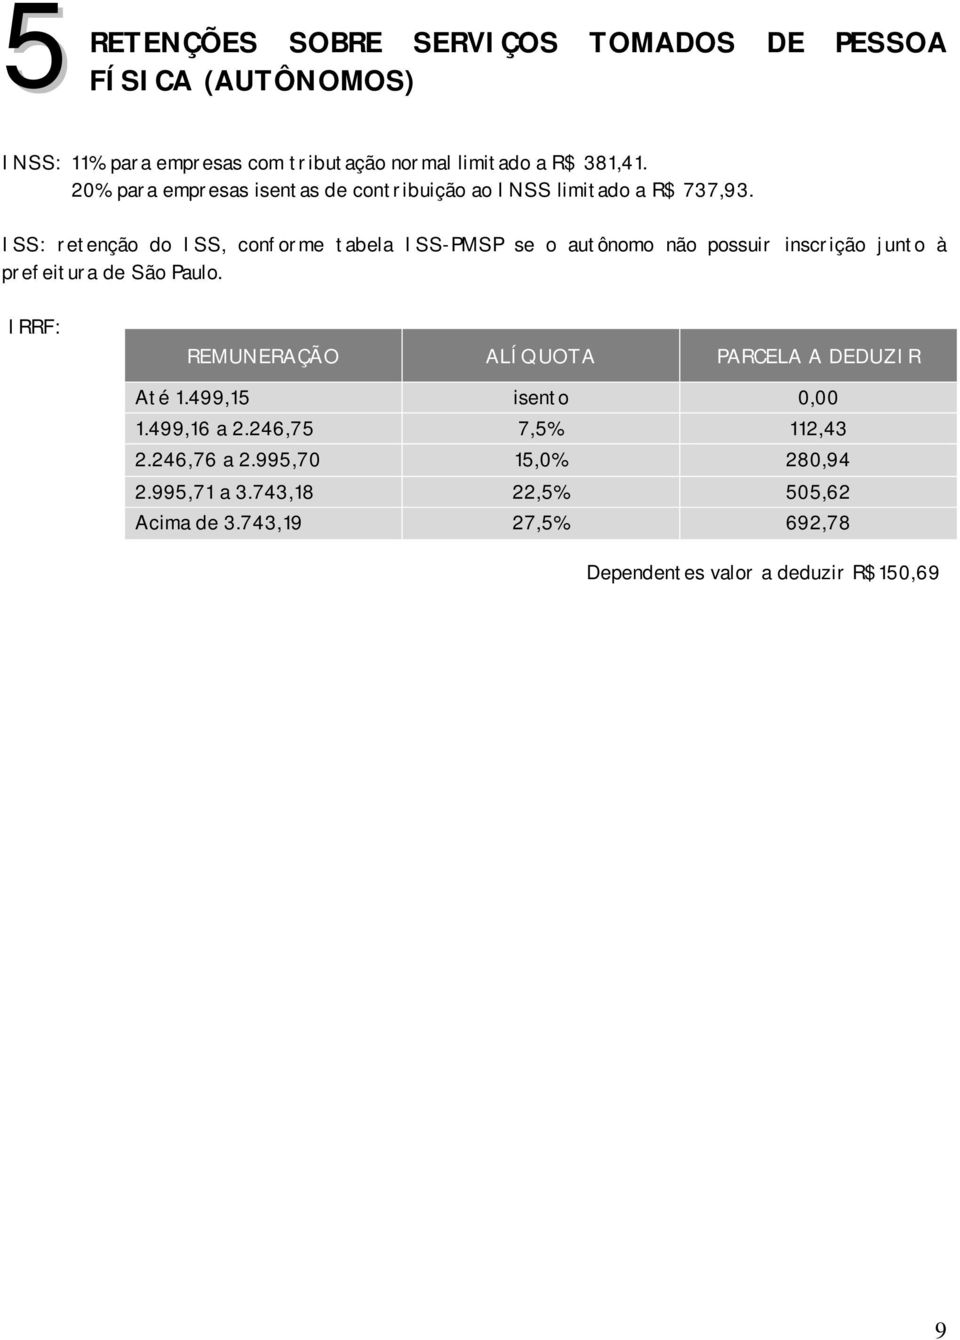 ISS: retenção do ISS, conforme tabela ISS-PMSP se o autônomo não possuir inscrição junto à prefeitura de São Paulo.